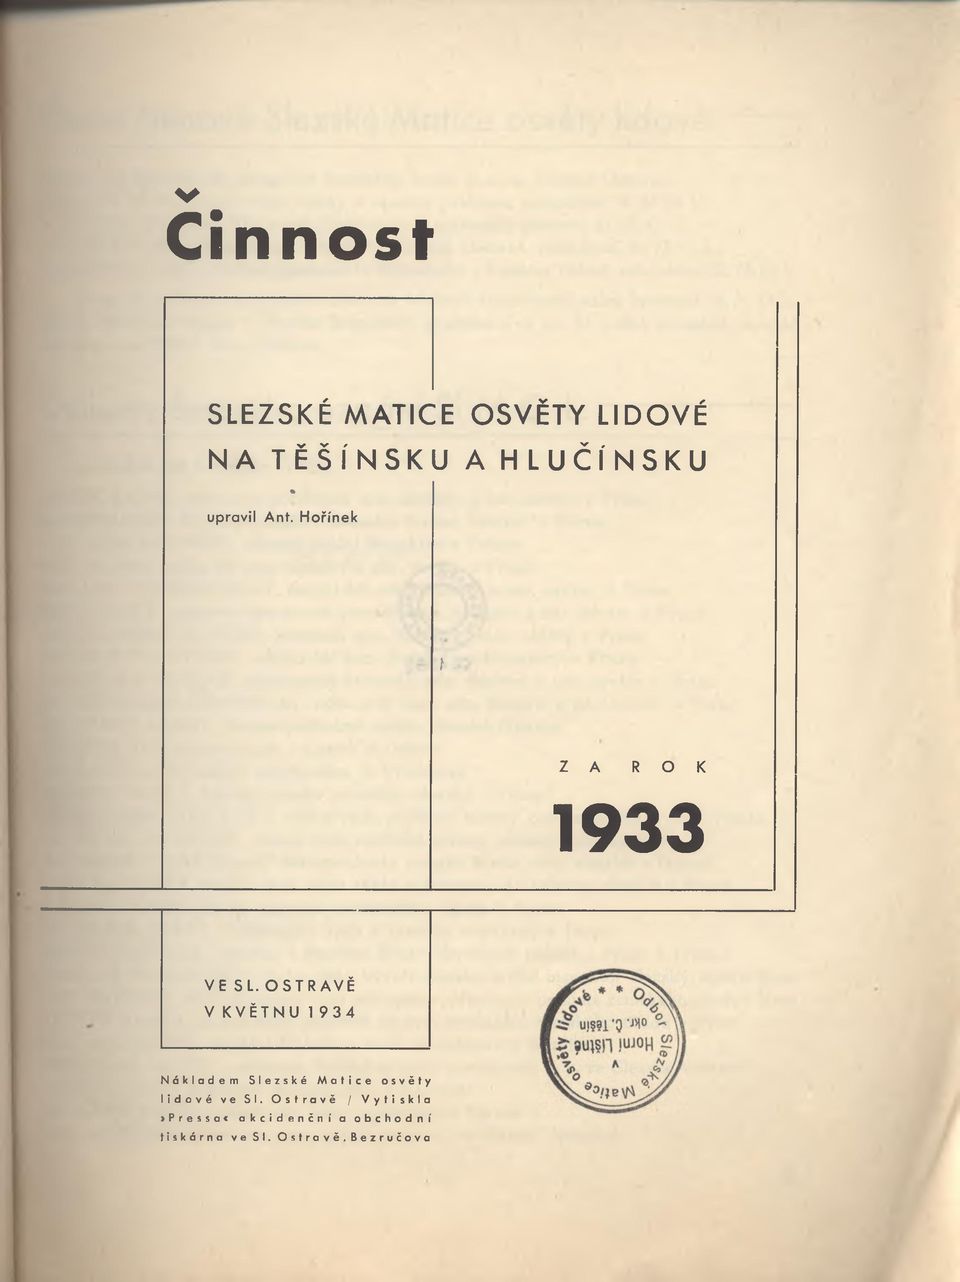 OSTRAVĚ V KVĚTNU 1934 Nákladem Slezské Matice osvěty lidové ve SI.